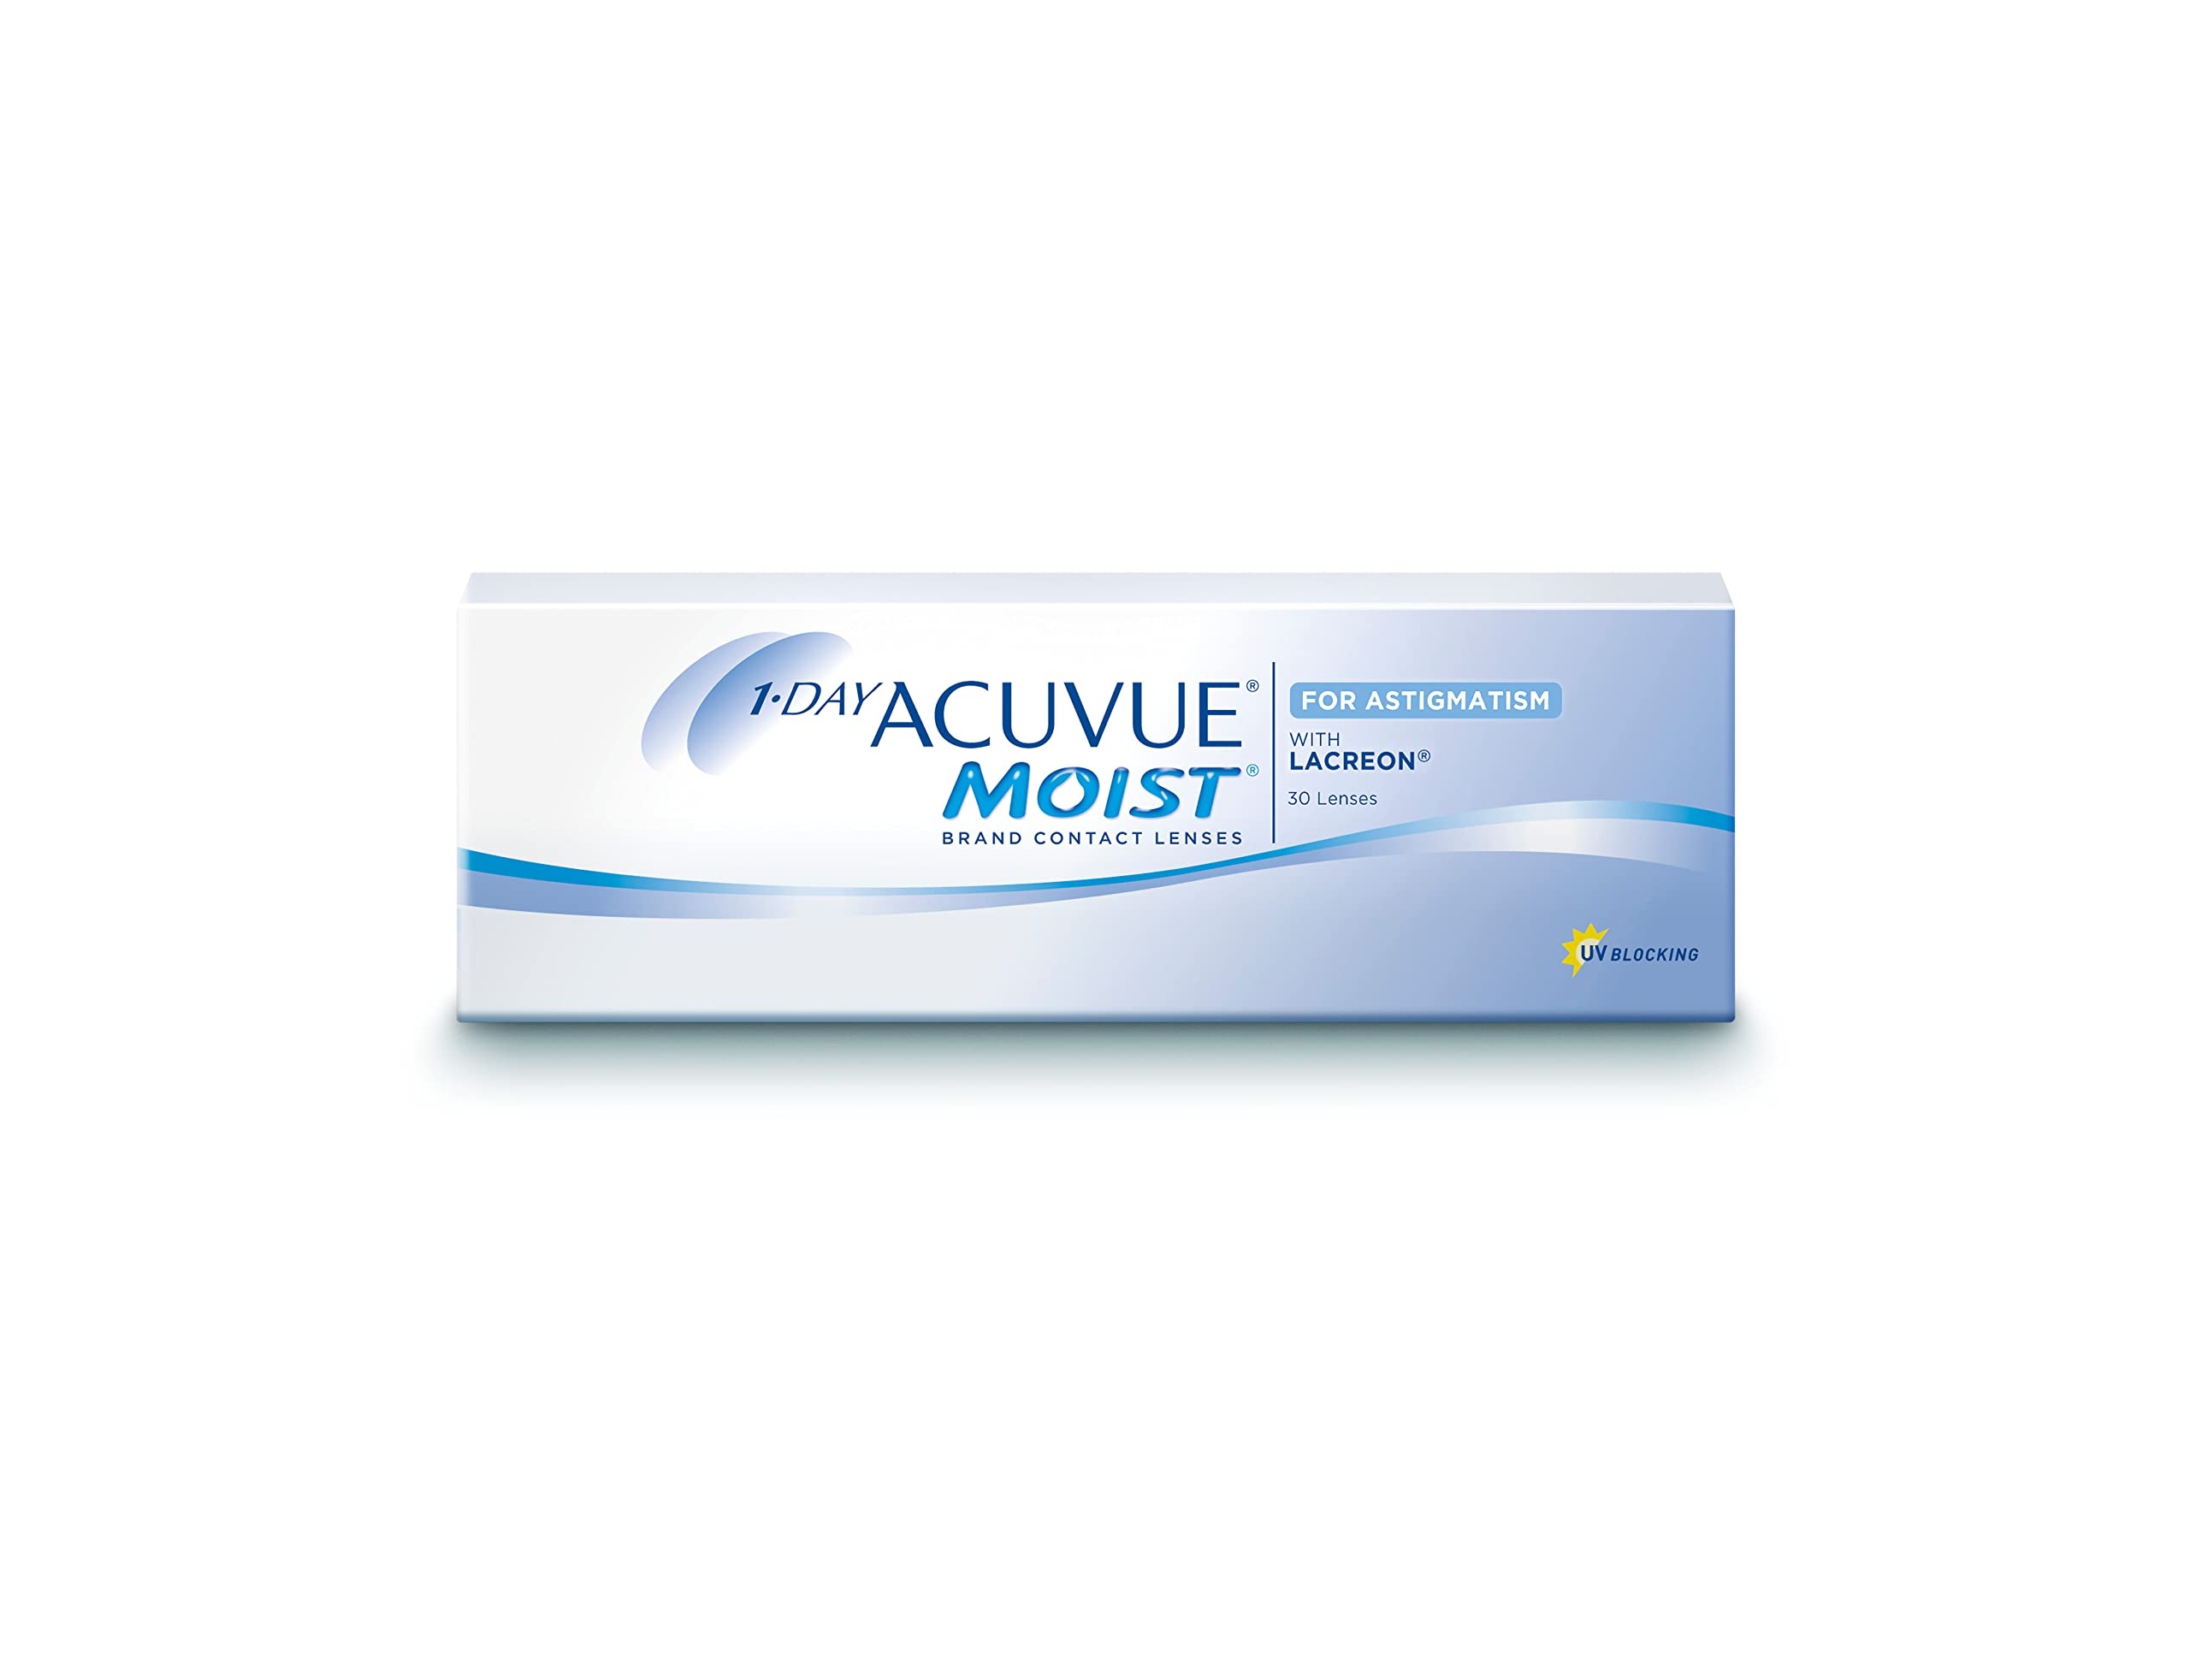 acuvue moist astigmatism